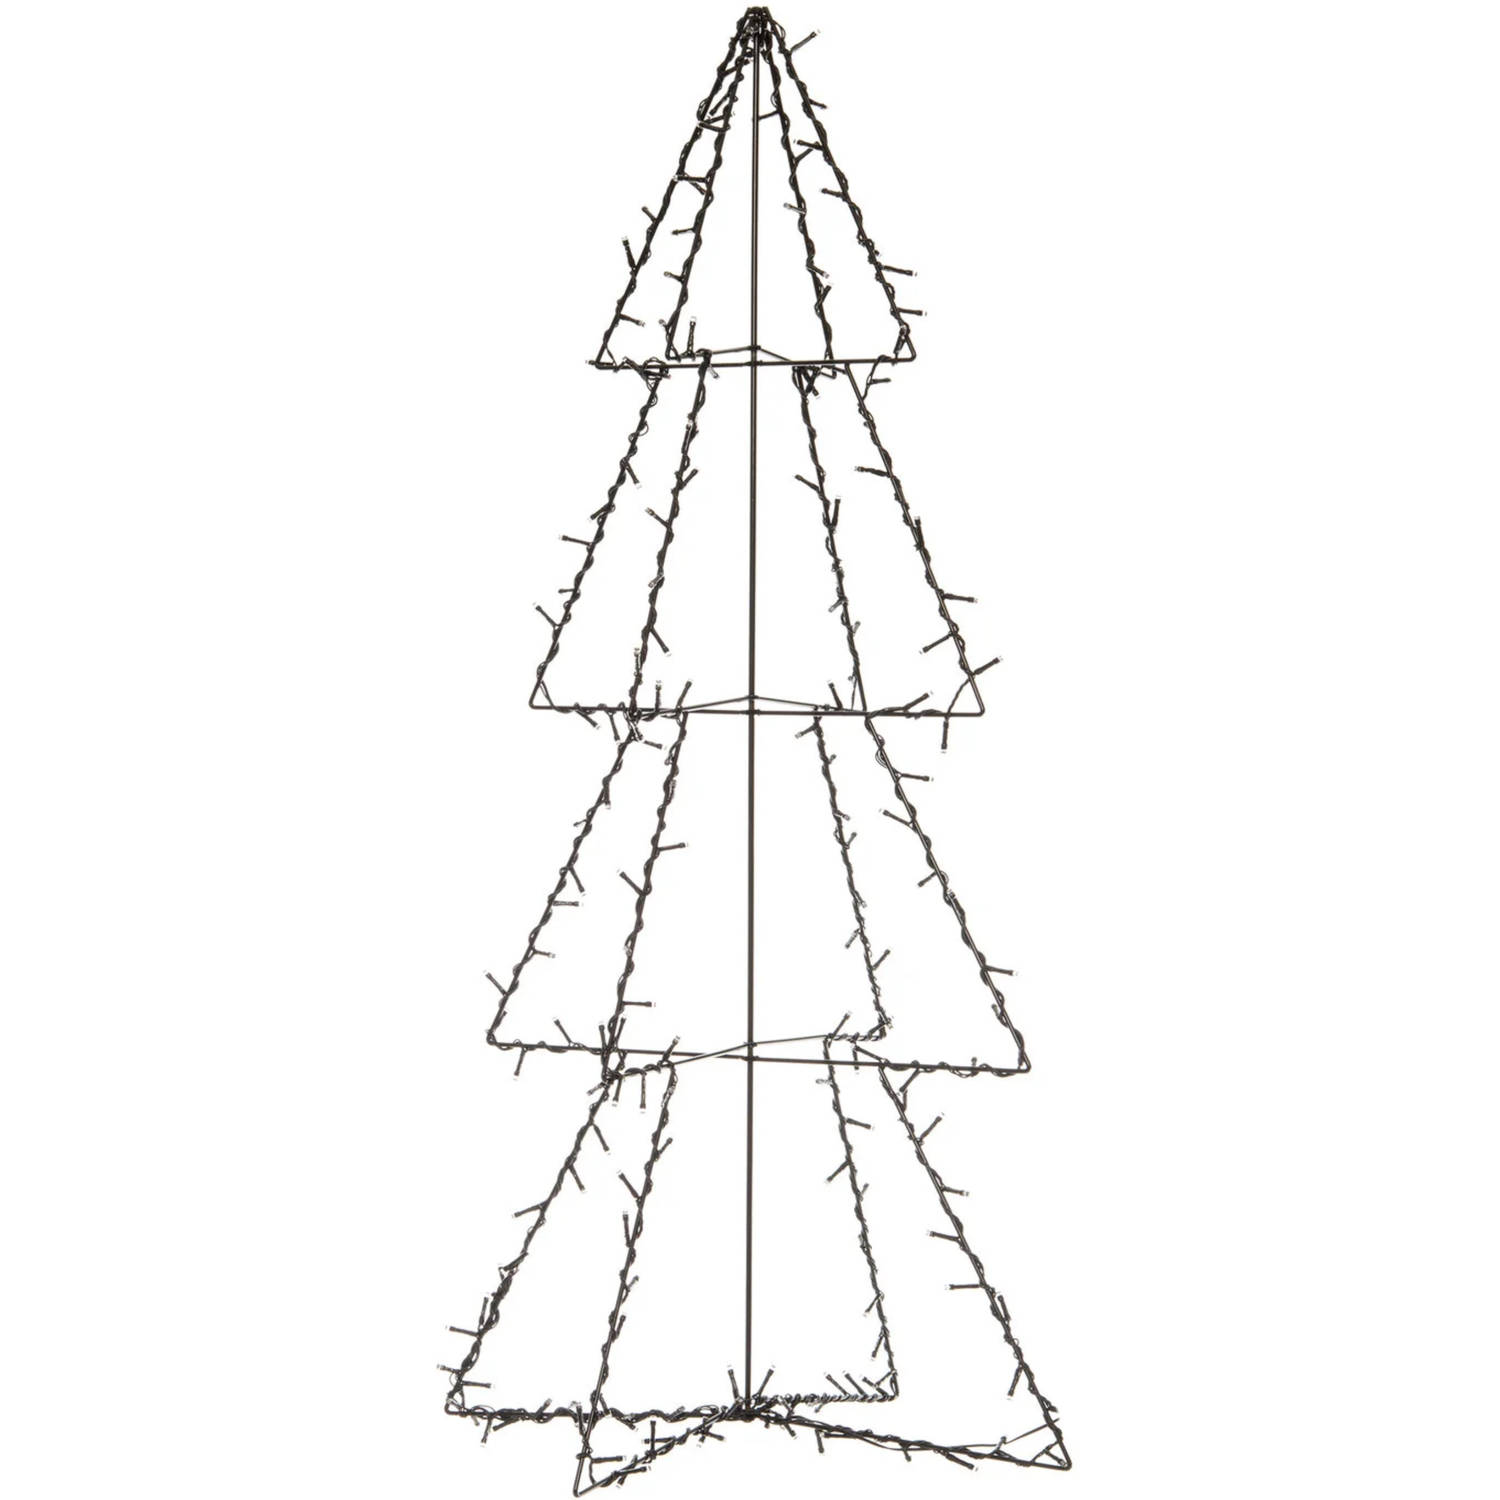 Verlichte figuren zwarte 3D lichtboom/metalen boom/kerstboom met 190 led lichtjes 117 cm - kerstverlichting figuur